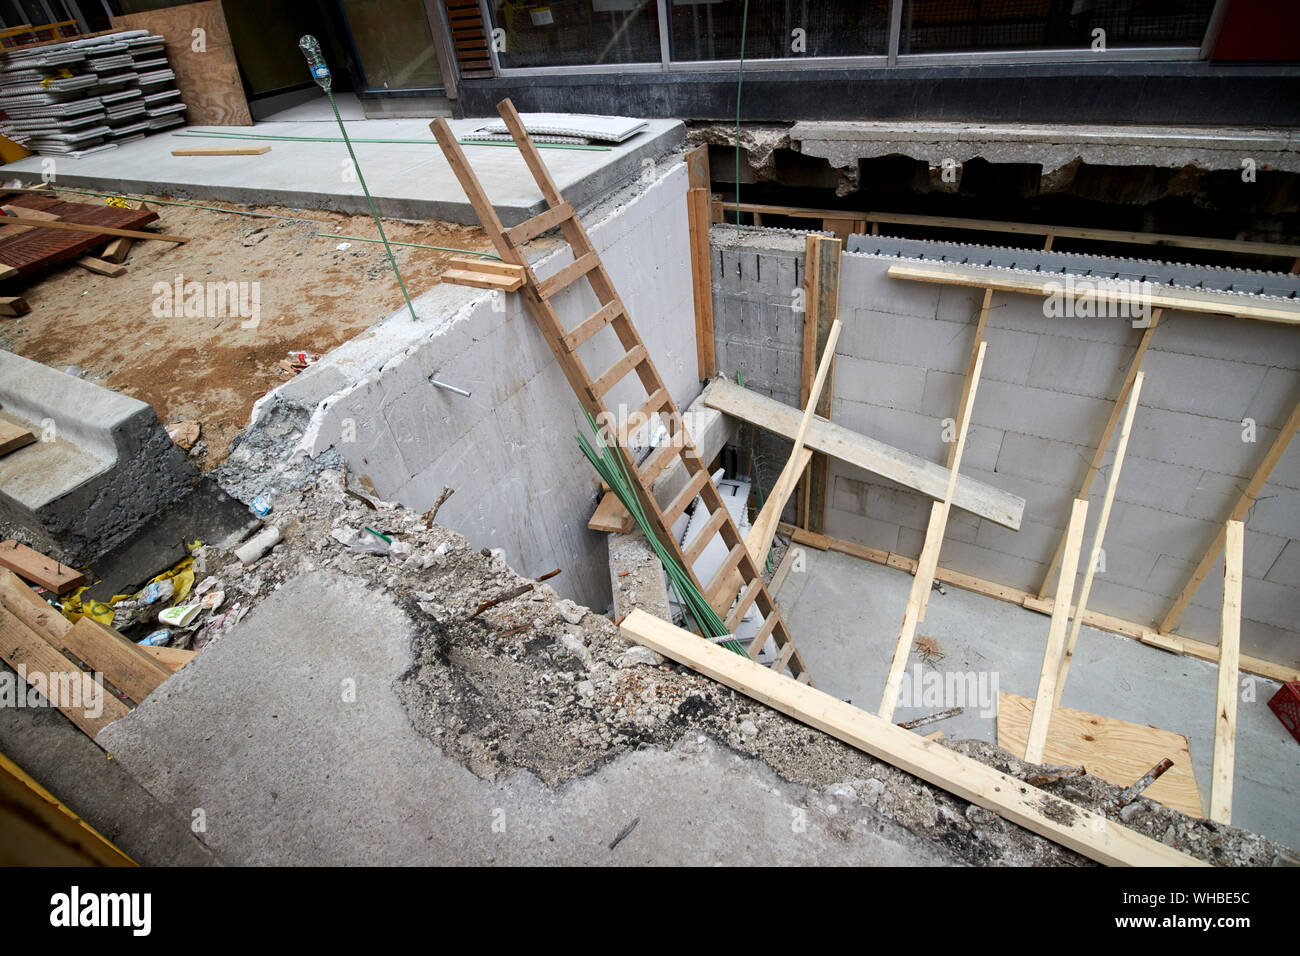 Échelle en bois vers le bas dans les travaux de construction ont permis de consolider les fondations sous-sol bâtiment souterrain place Chicago Illinois Etats-Unis d'Amérique Banque D'Images